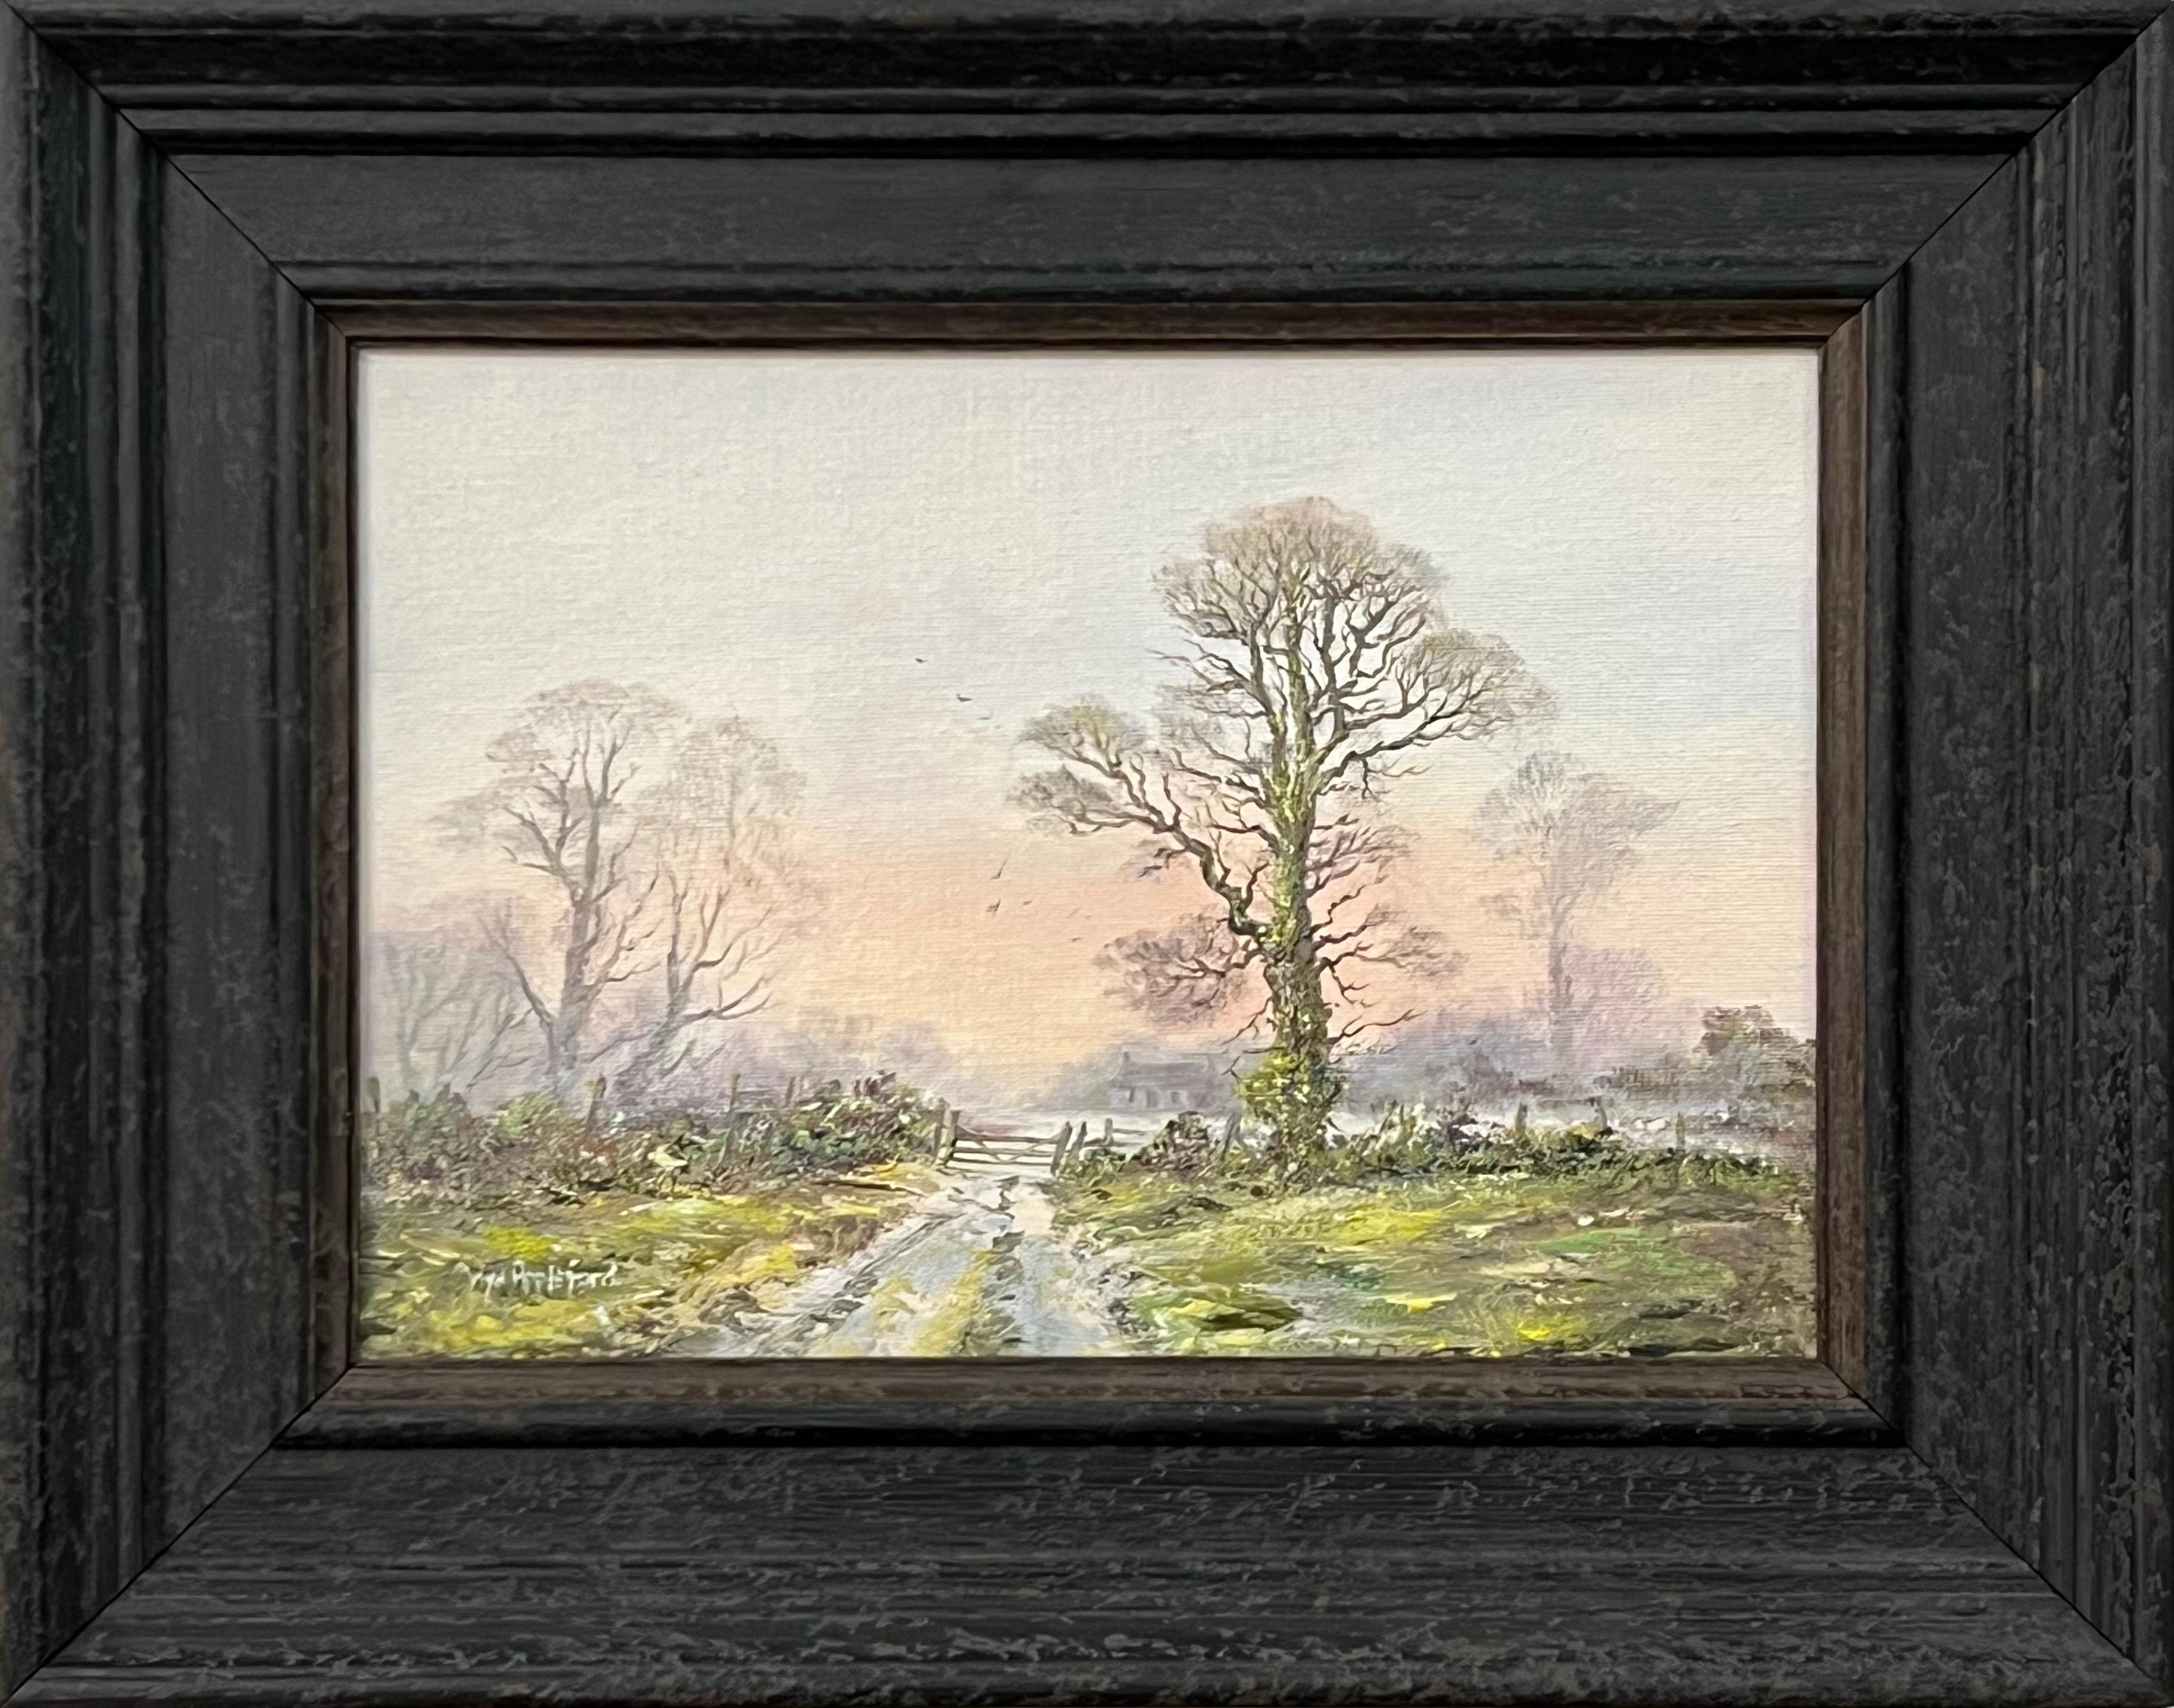 Landscape Painting Wyn Appleford - Tracks de ferme en paysage boisé rose et vert par un artiste britannique du 20e siècle